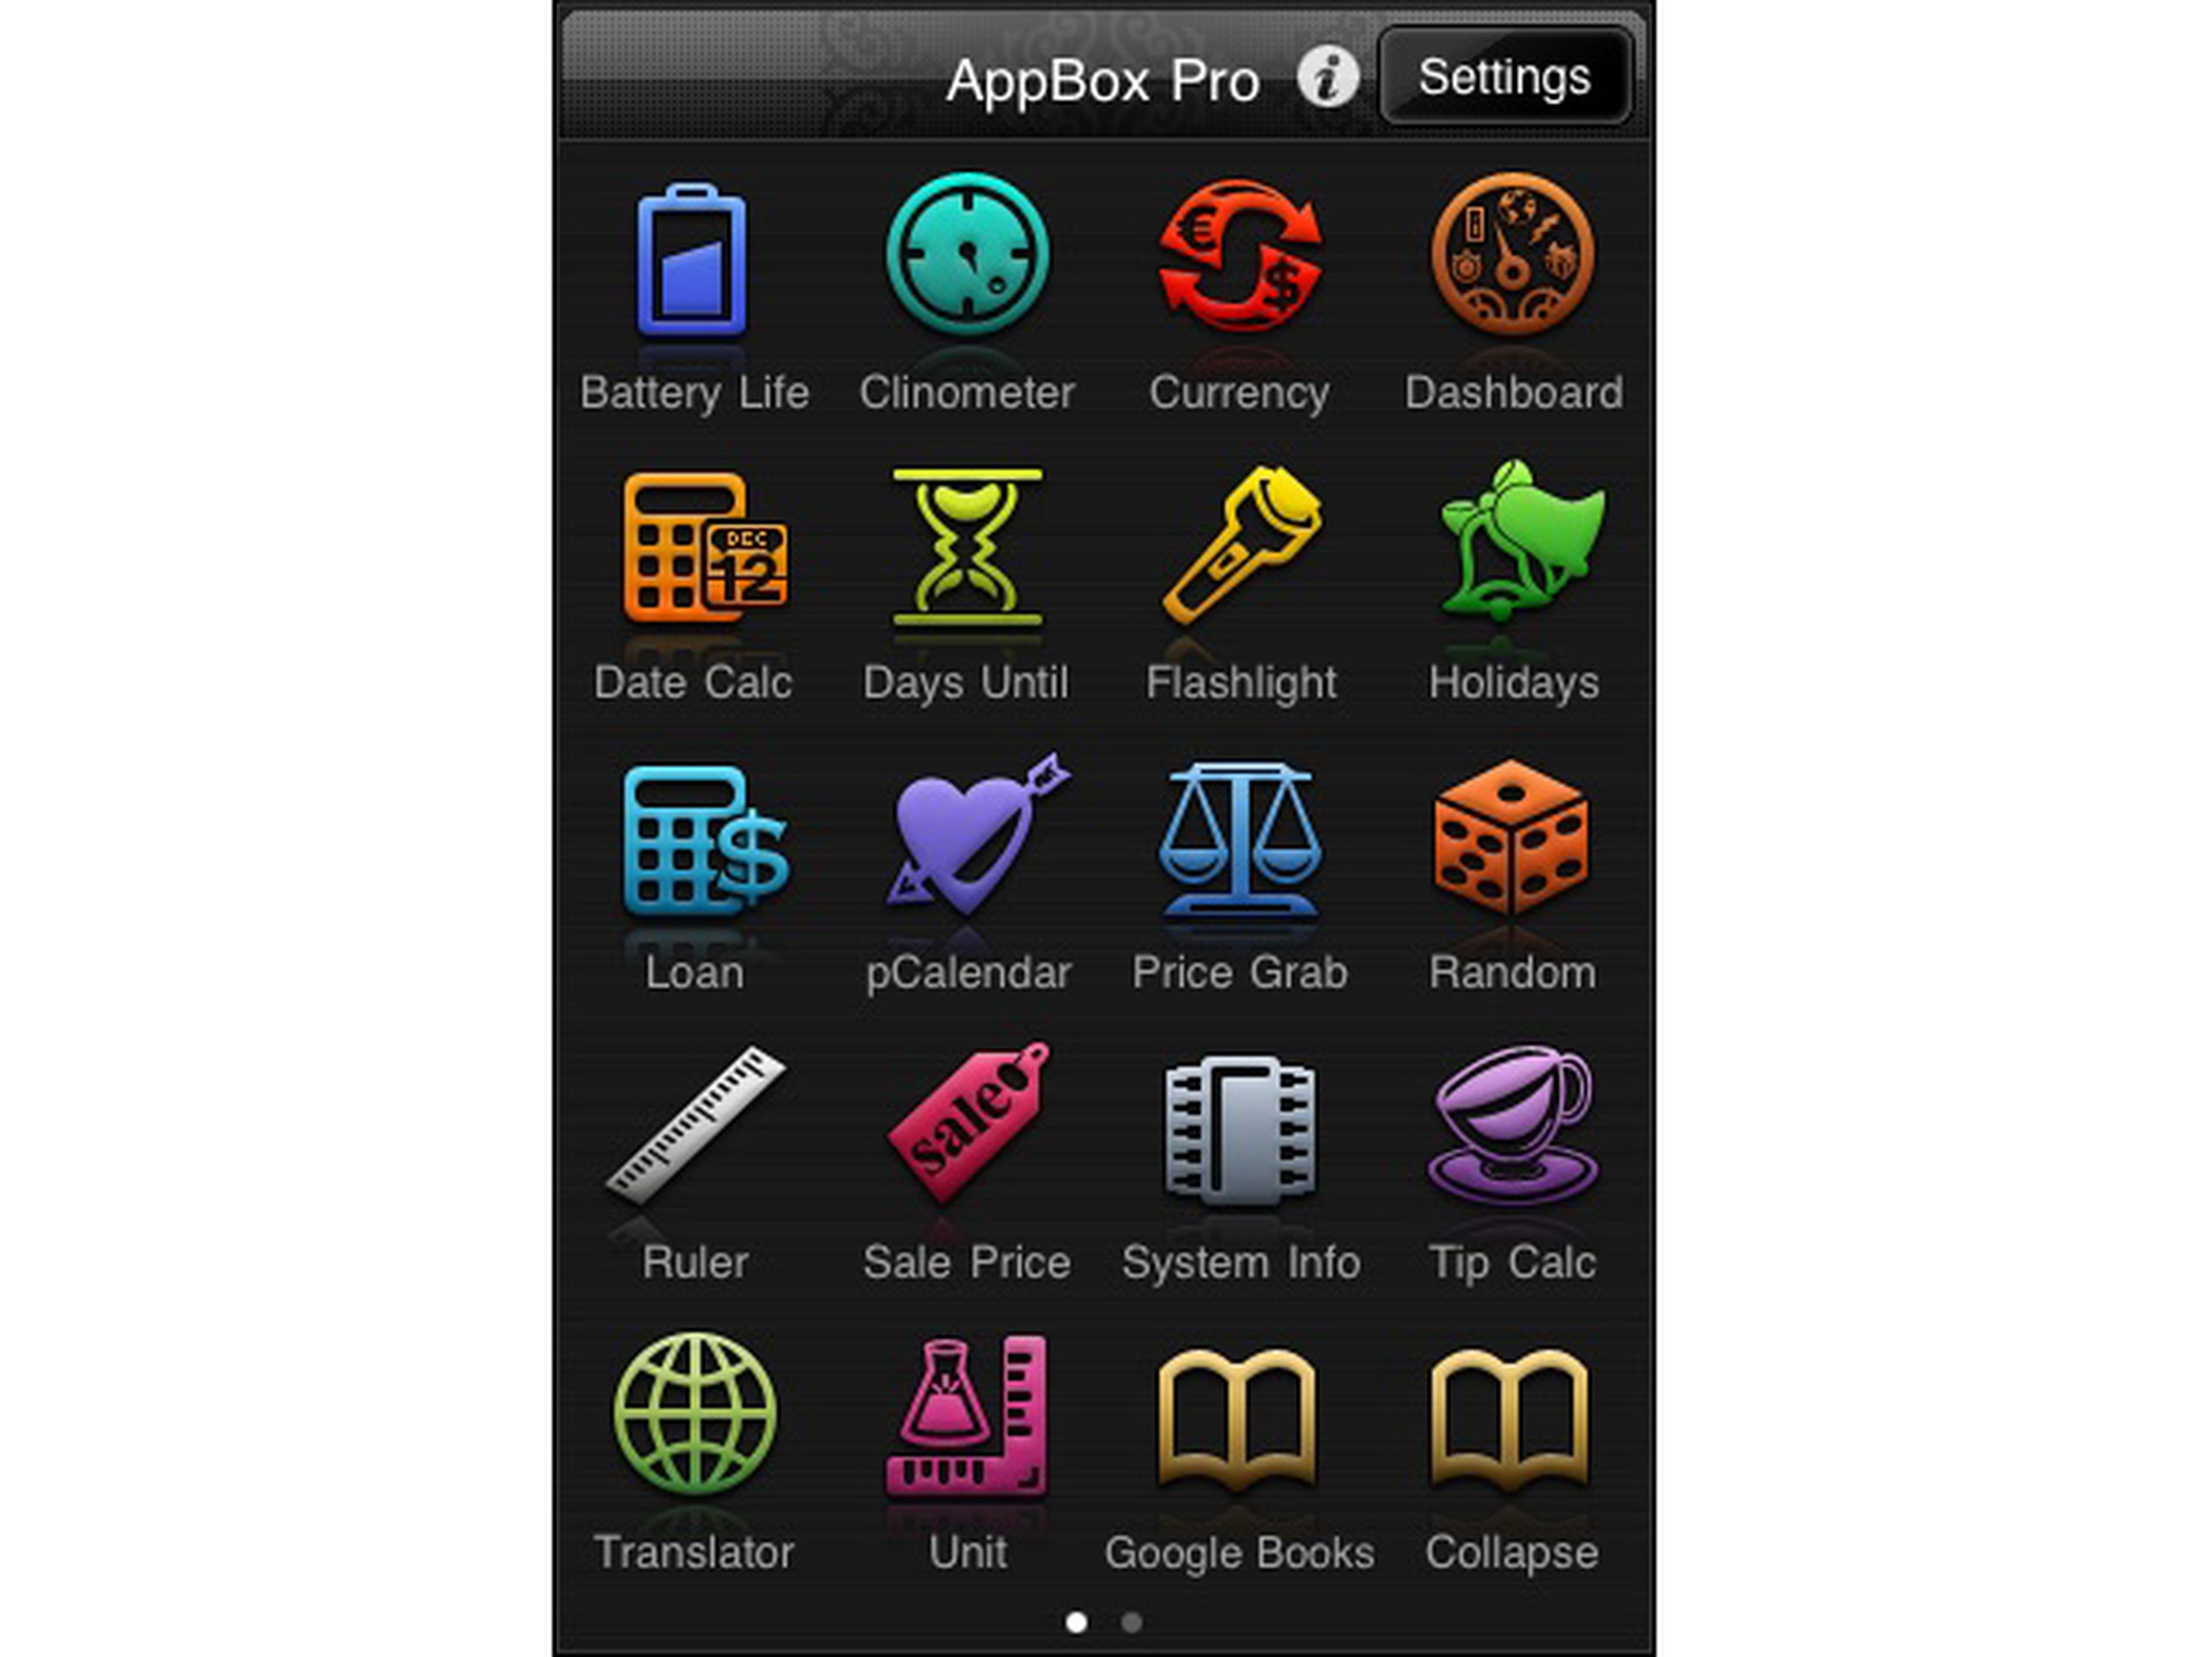 AppBox Pro